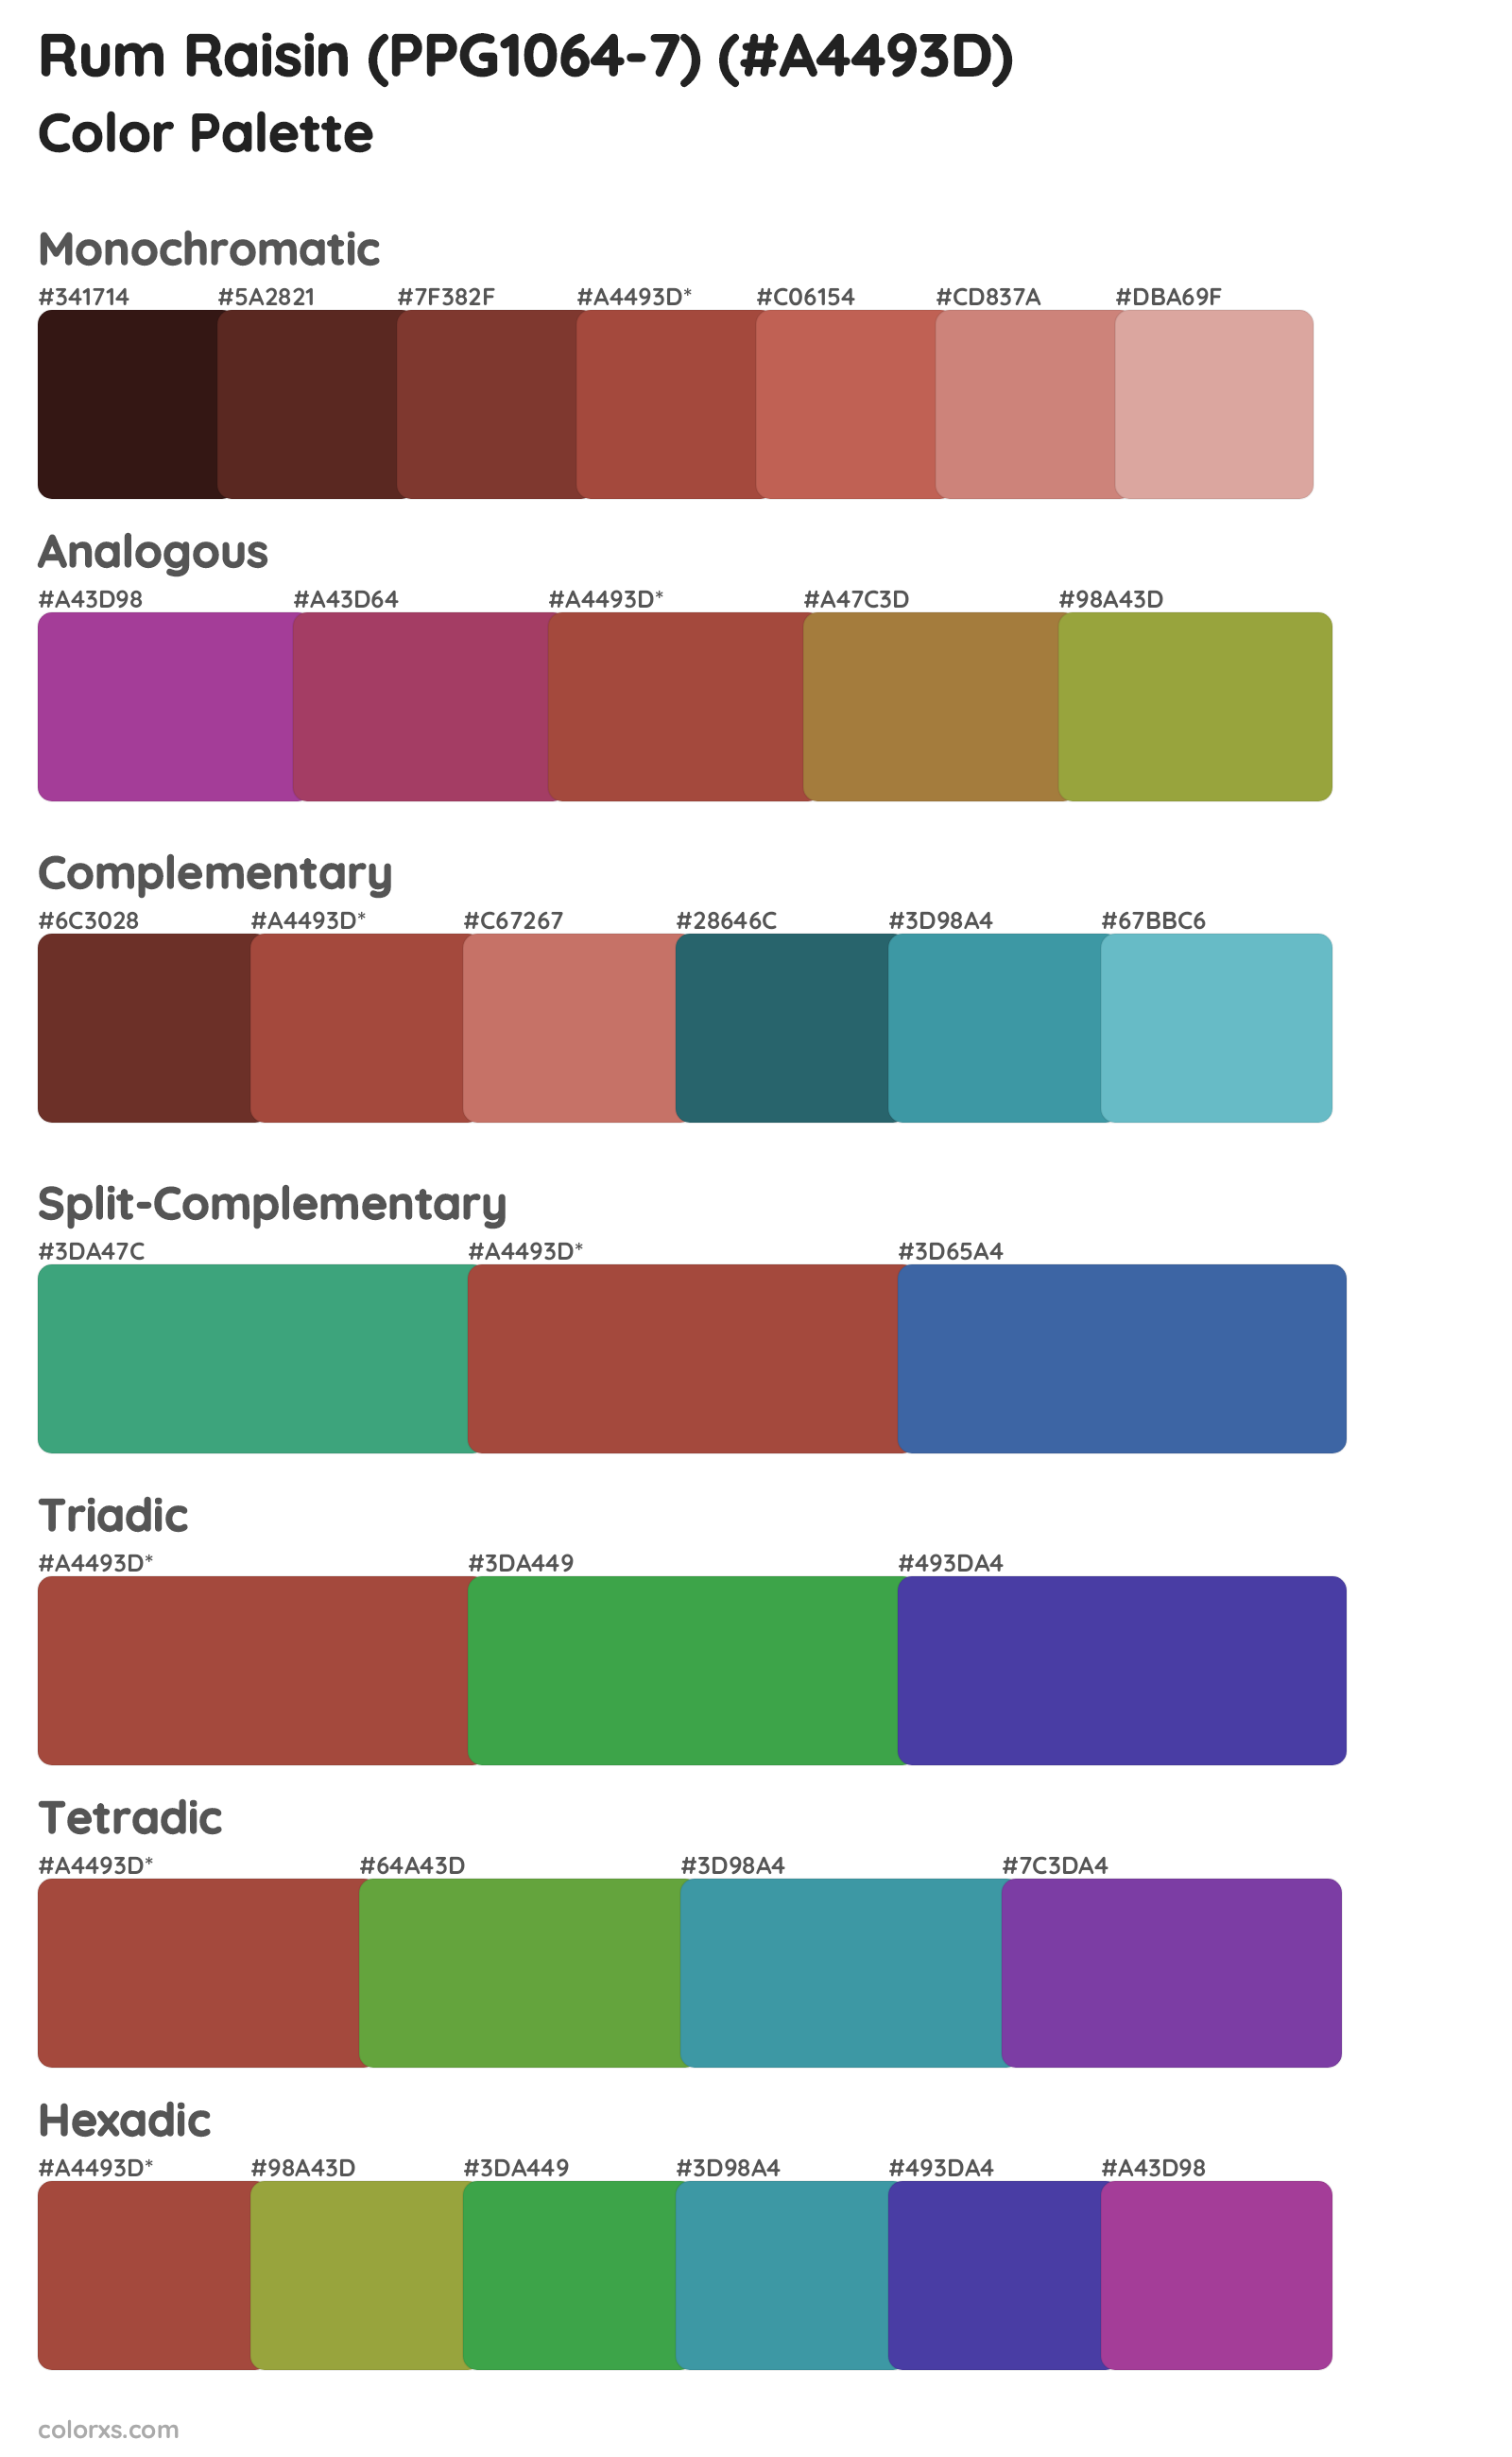 Rum Raisin (PPG1064-7) Color Scheme Palettes